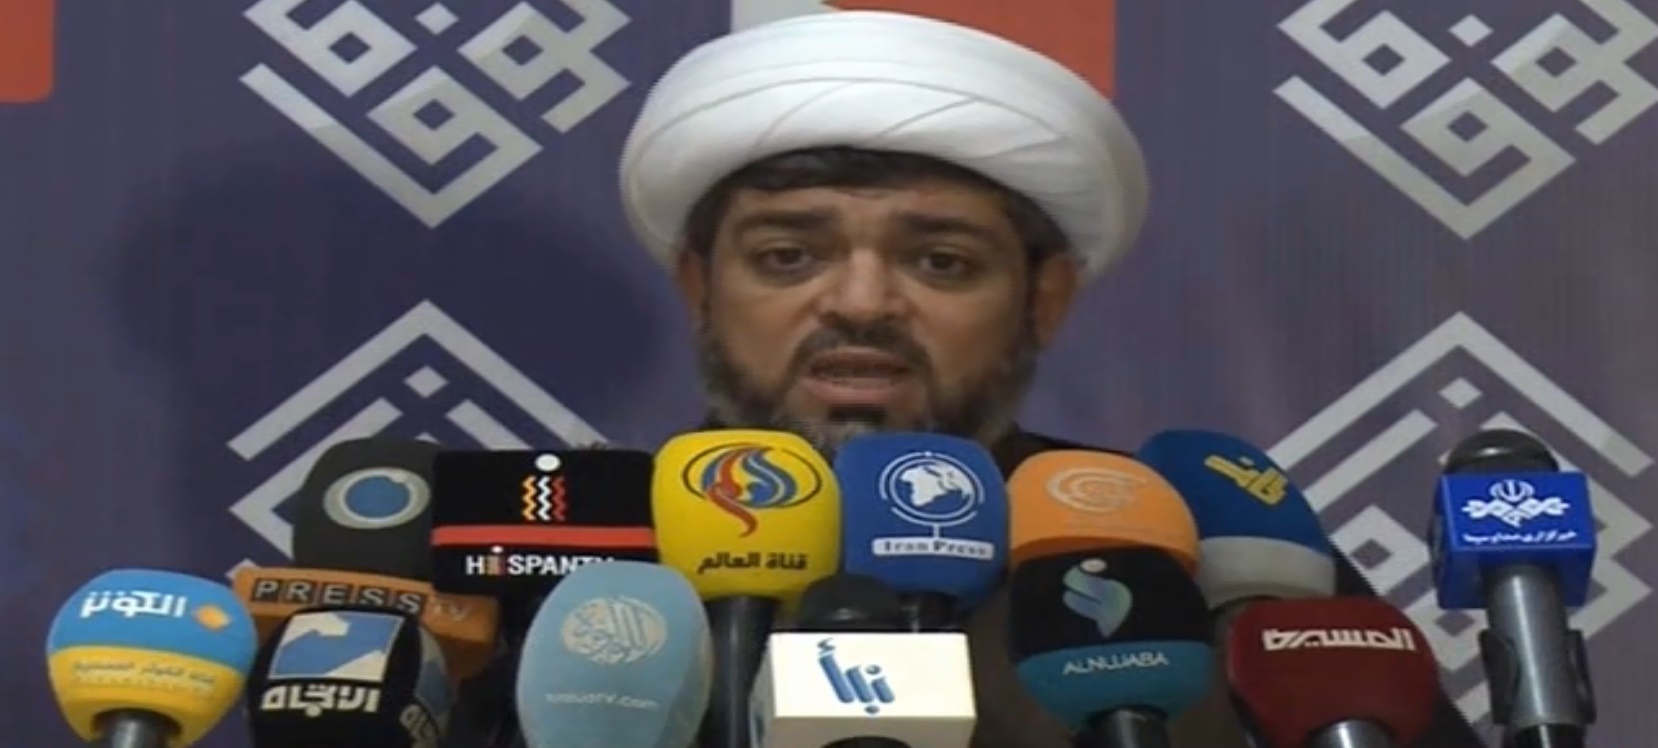 الوفاق بحرين : مشارکت در انتخابات کمتر از 28 درصد بود !